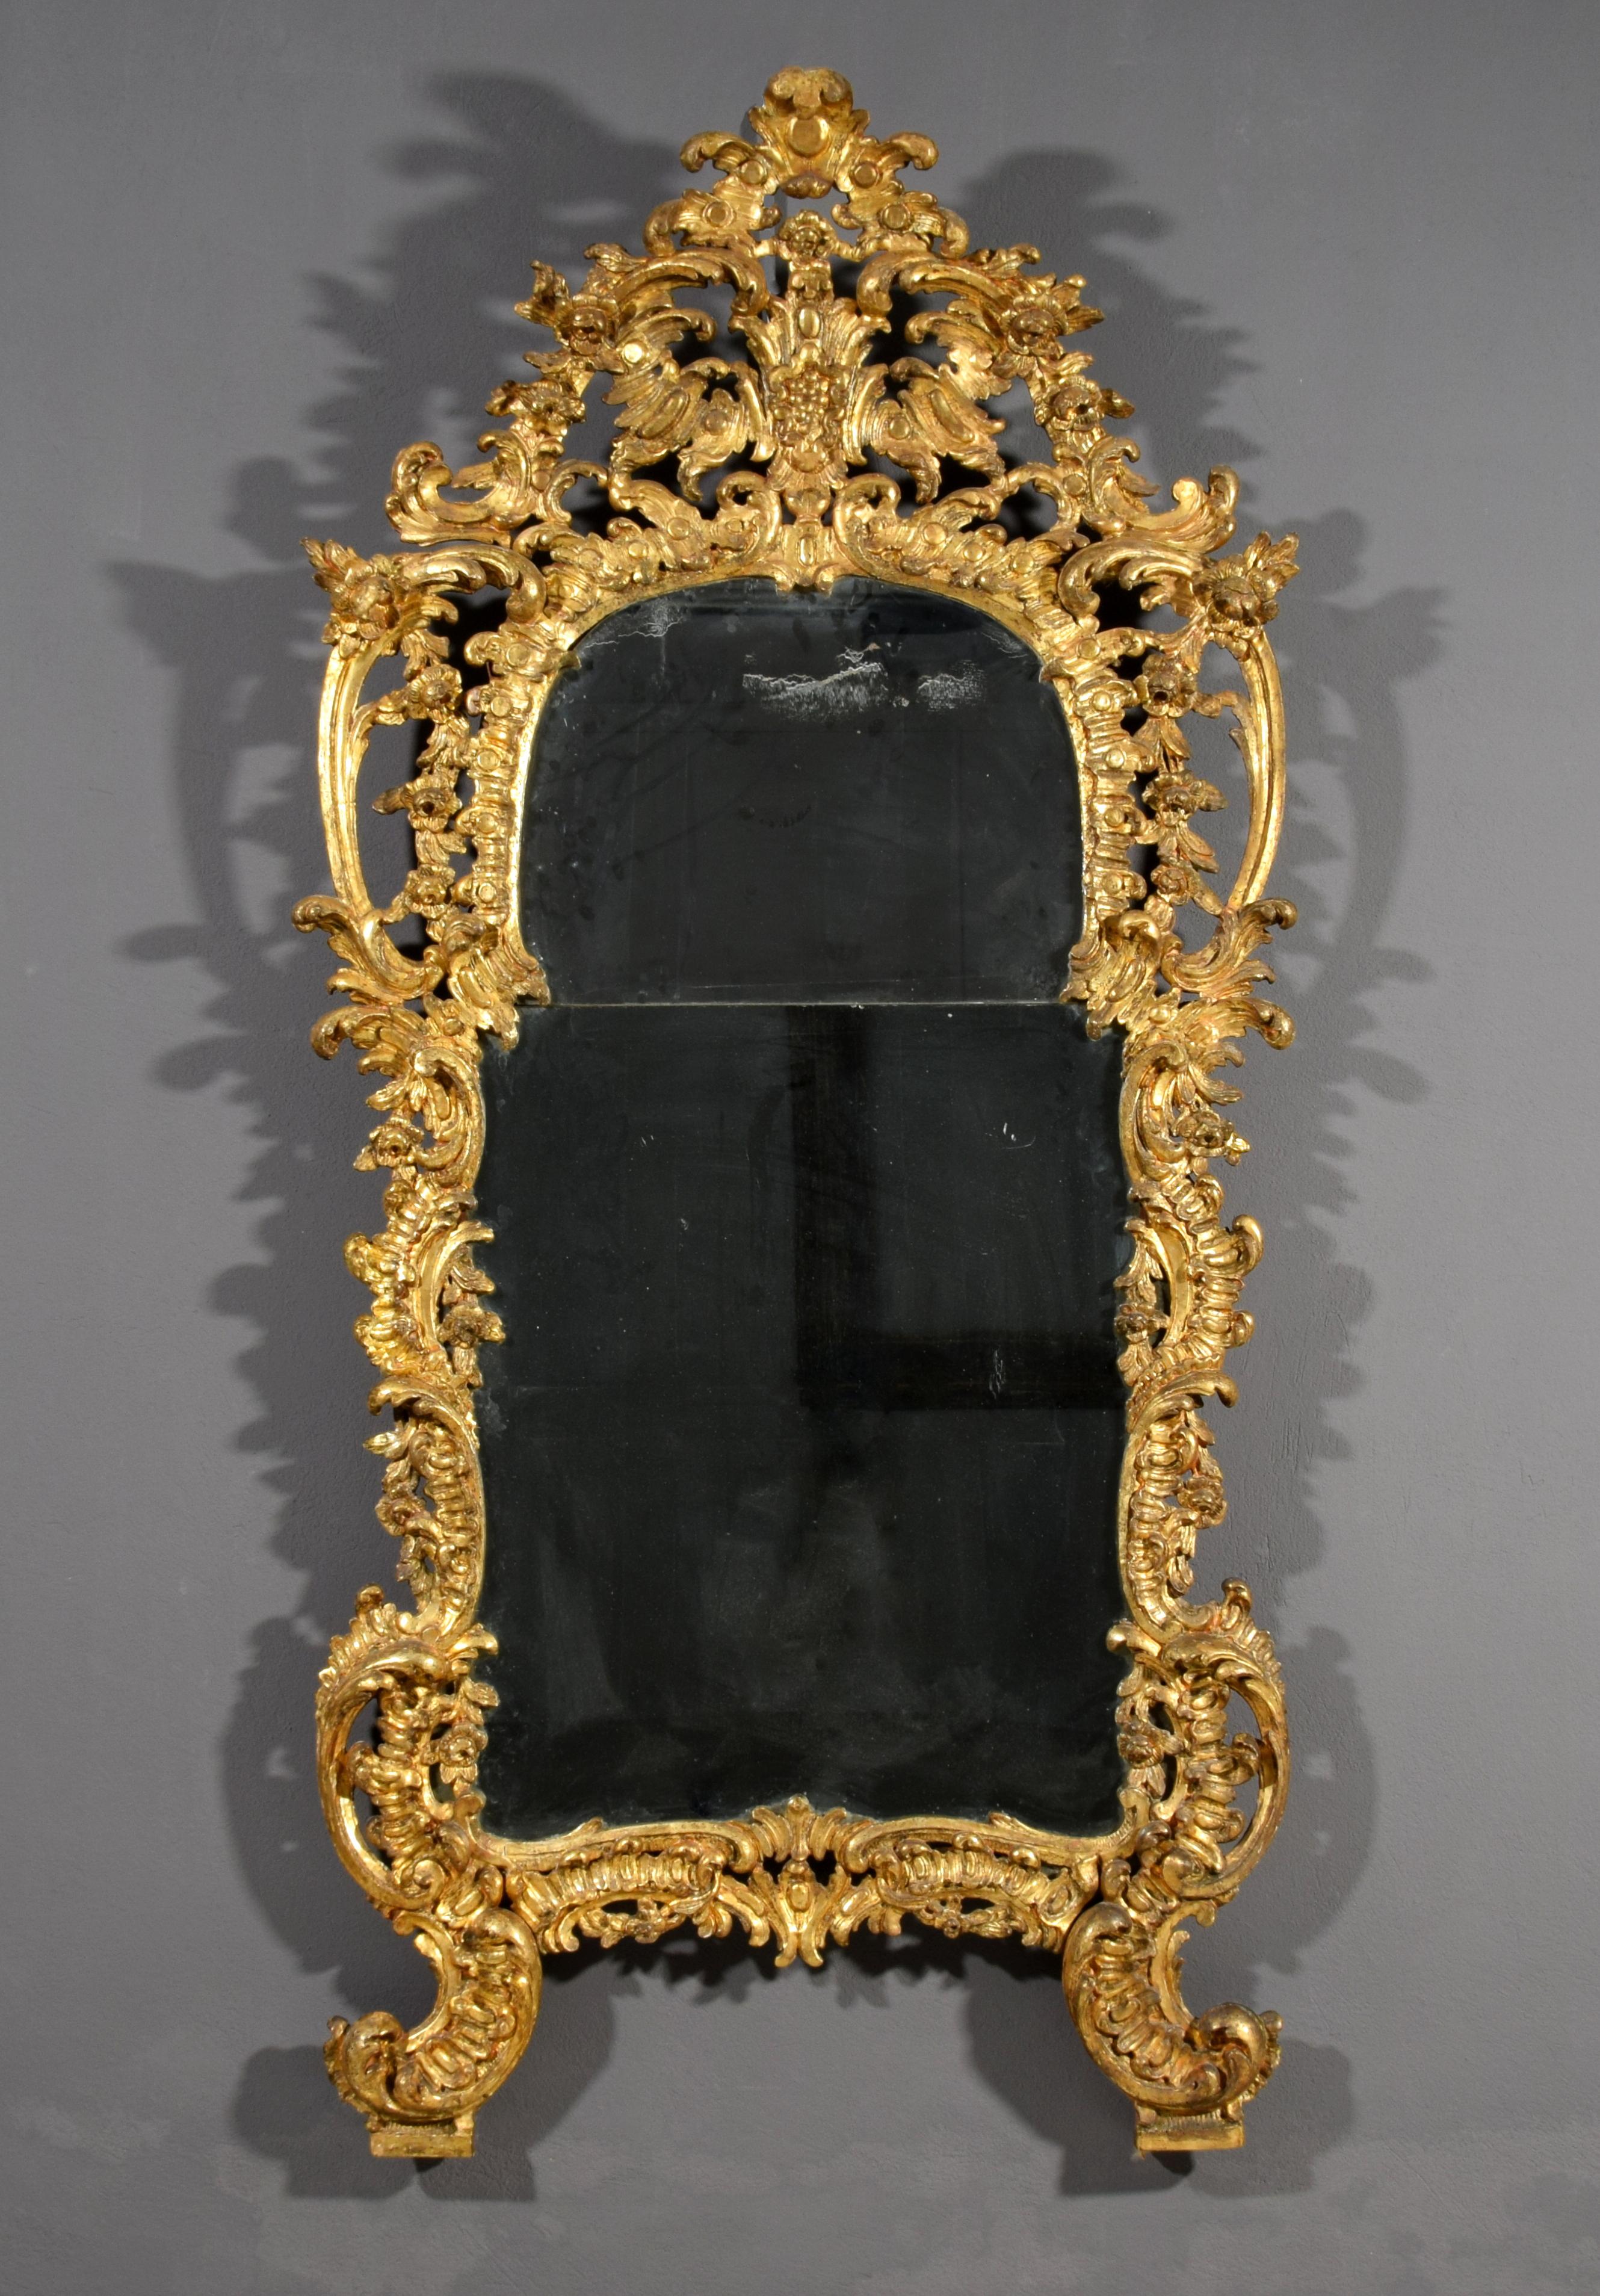 Miroir italien Barocchetto (Rococo) du 18e siècle en bois doré sculpté à la main 

Ce miroir raffiné et élégant, fabriqué à Turin, en Italie, au milieu du XVIIIe siècle, possède un cadre en bois richement sculpté de feuilles d'argent doré (mecca).